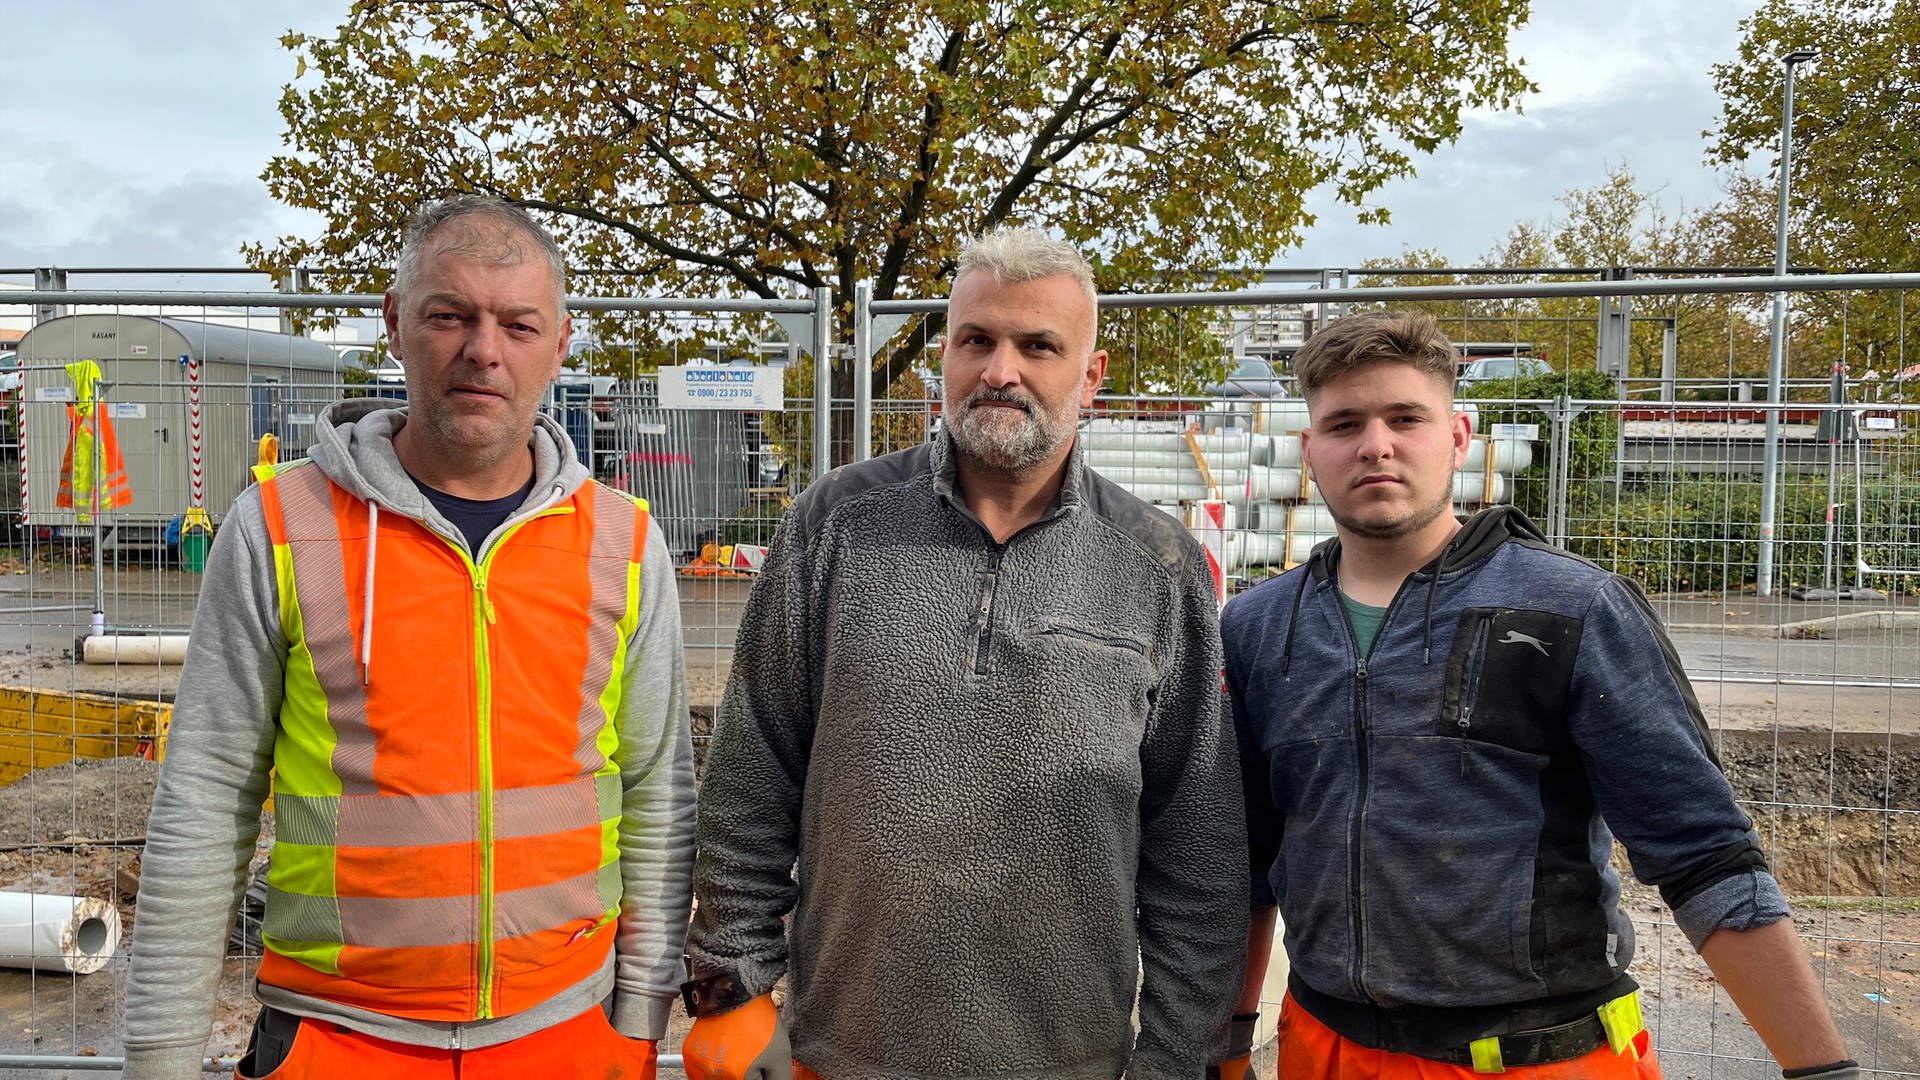 Drei Bauarbeiter verhindern die Entführtung eines Jungen in Böblingen. (Foto: SWR)